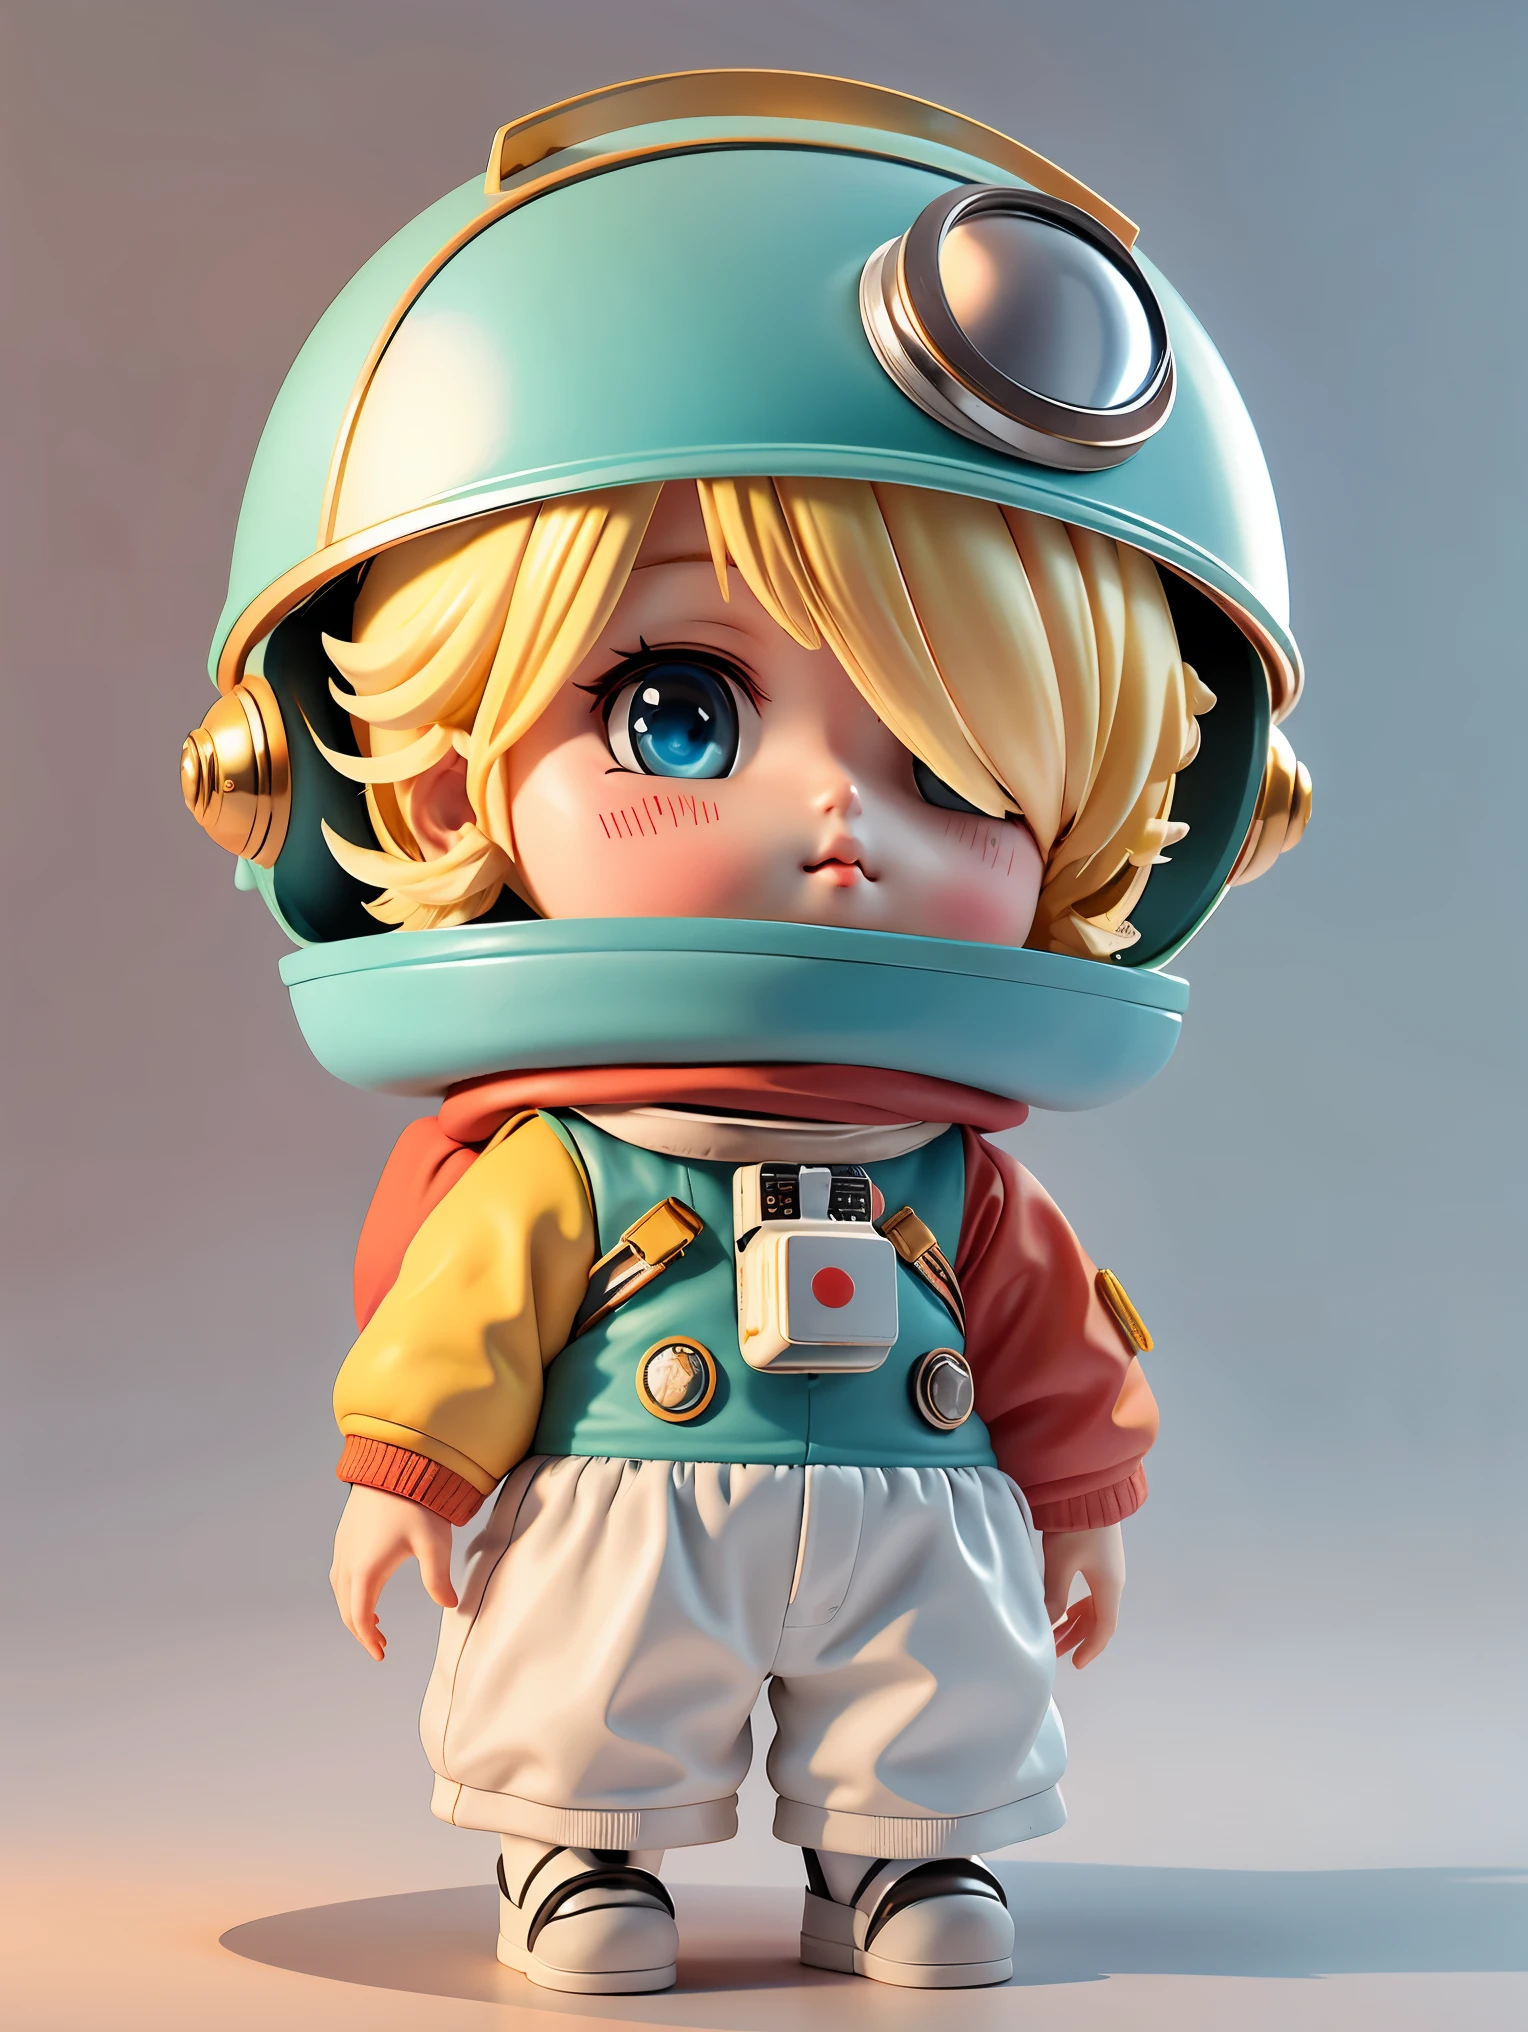 有一个戴着头盔和头盔的小娃娃., 可爱的3D渲染, 小宇航员抬头., 垂直动漫太空军校男孩, 可爱的动漫 3D 渲染, 可爱细致的数字艺术., 男探险家, 可爱的小 , 时尚的 3D 渲染, 8K 3D 渲染角色艺术, 可爱的数字绘画, 动漫风格3D, 高度详细的渲染